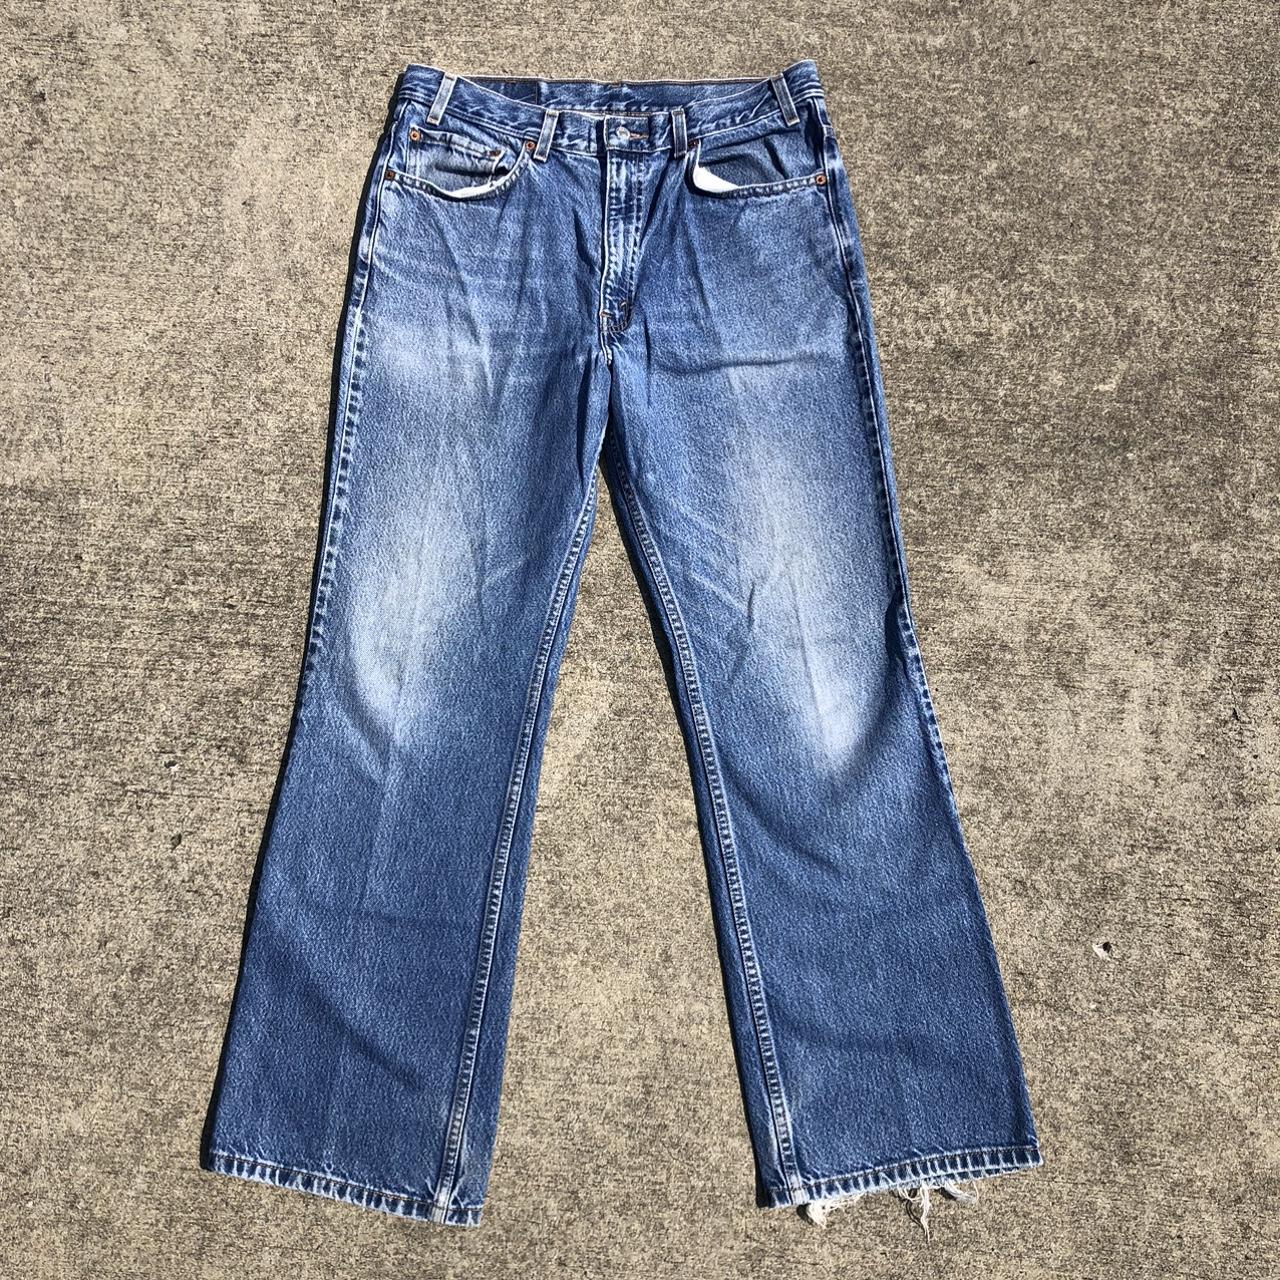 Vintage Levi’s 517 Bootcut Jeans Measure... - Depop